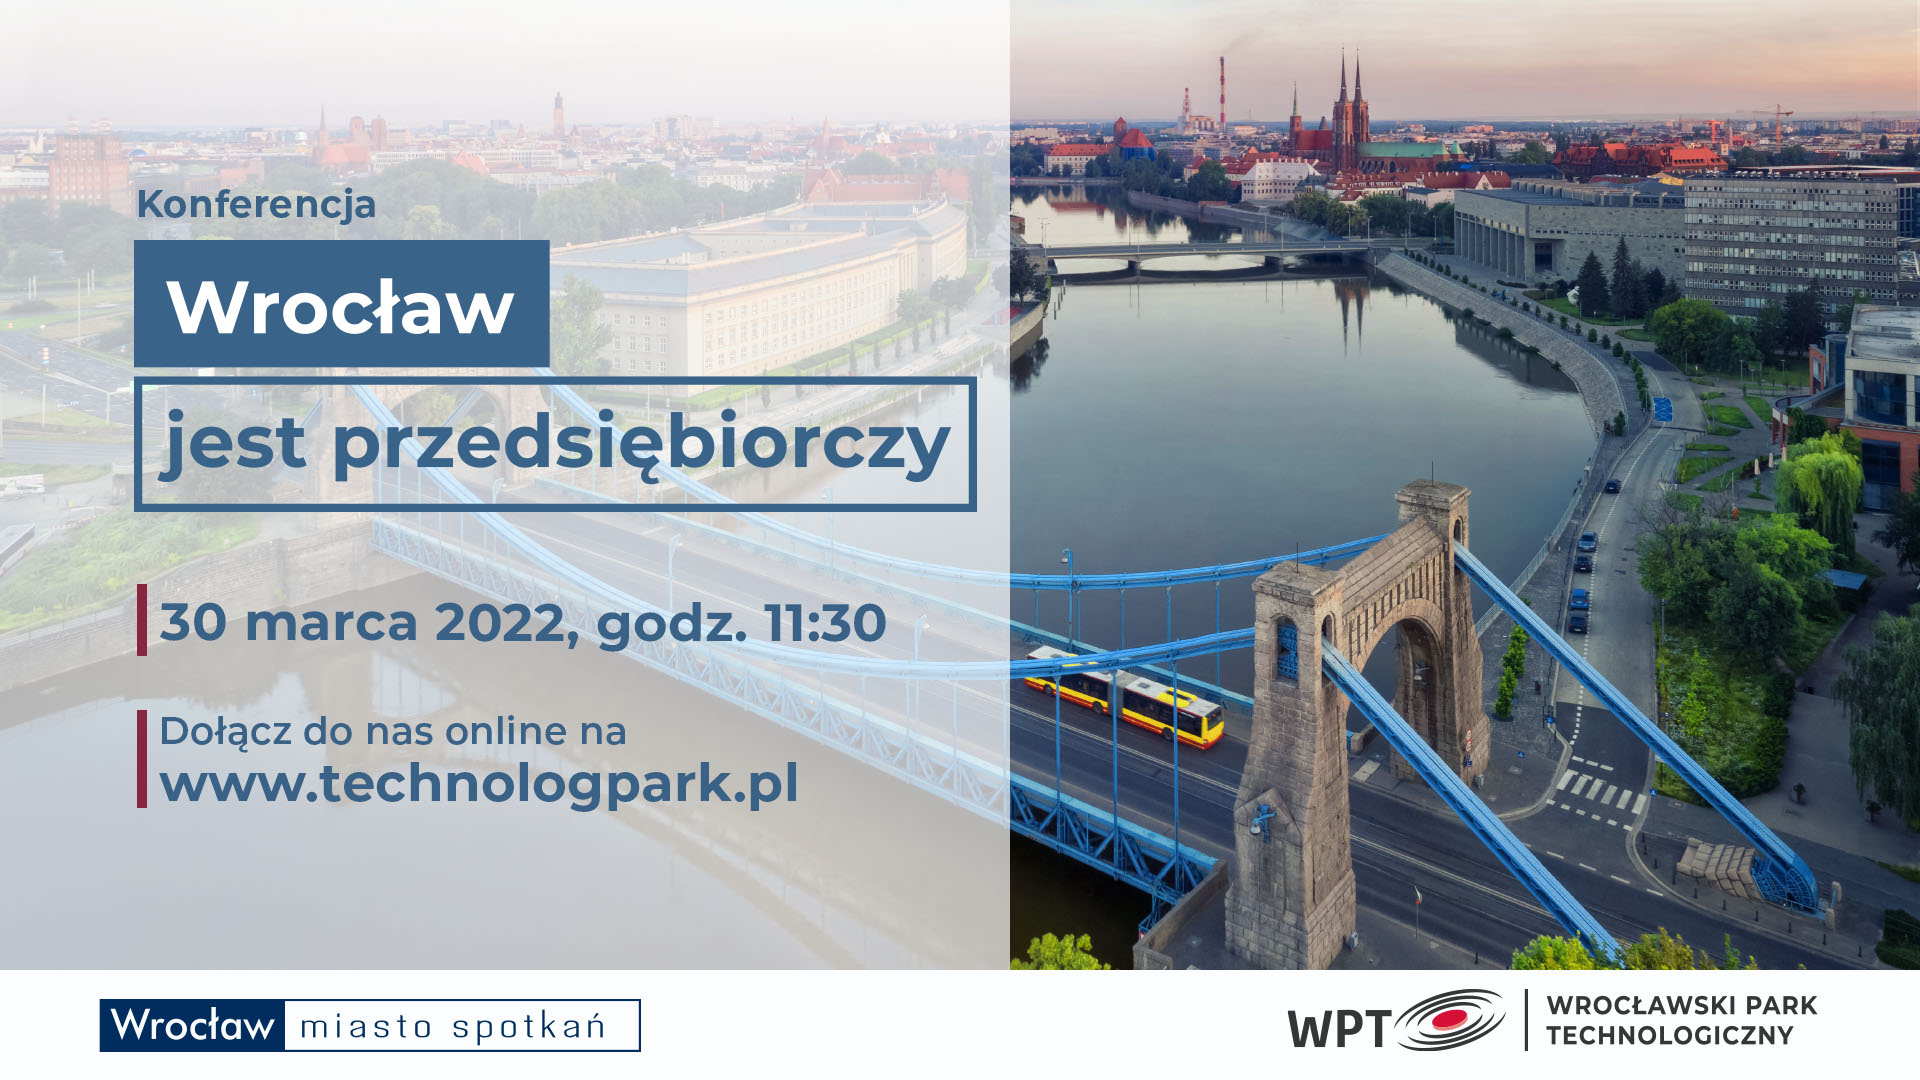 Zapraszamy na konferencję Wrocław jest przedsiębiorczy!